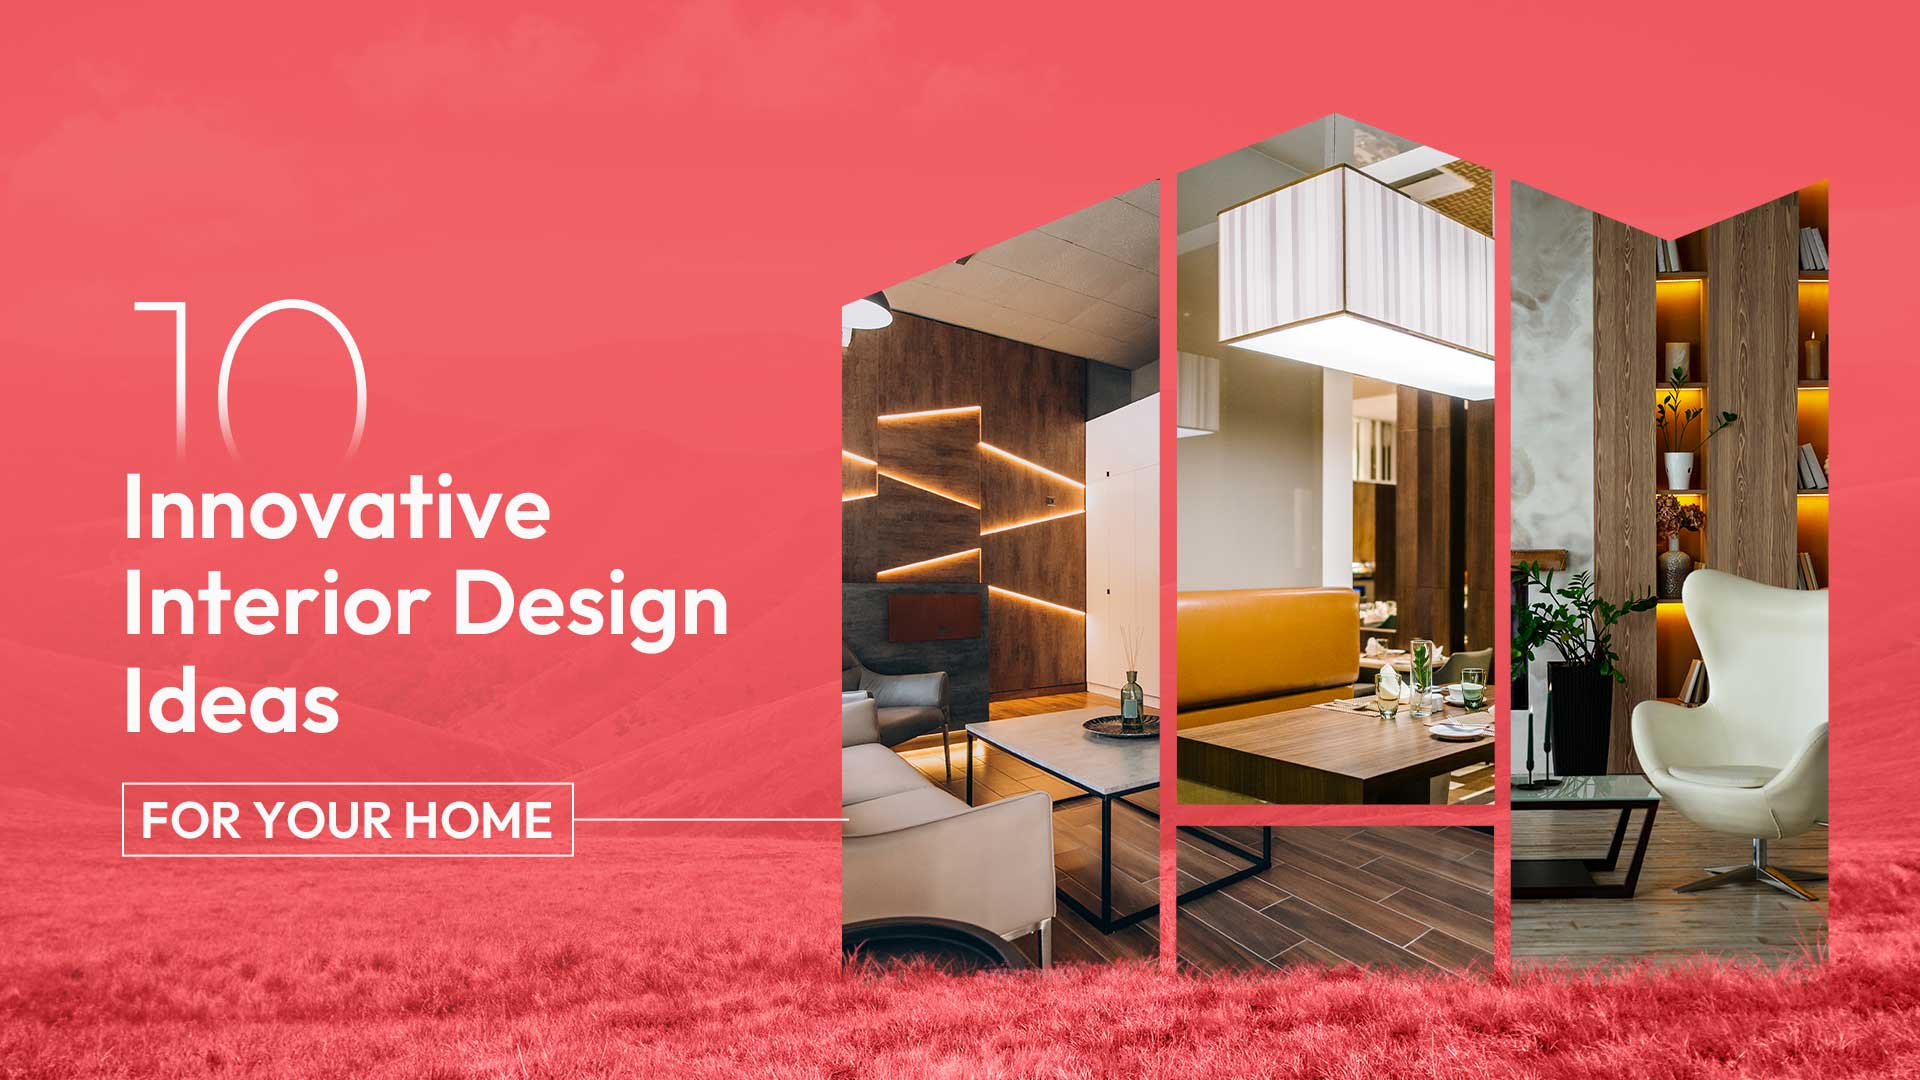 10 Innovative Interior Design Ideas for Your Home